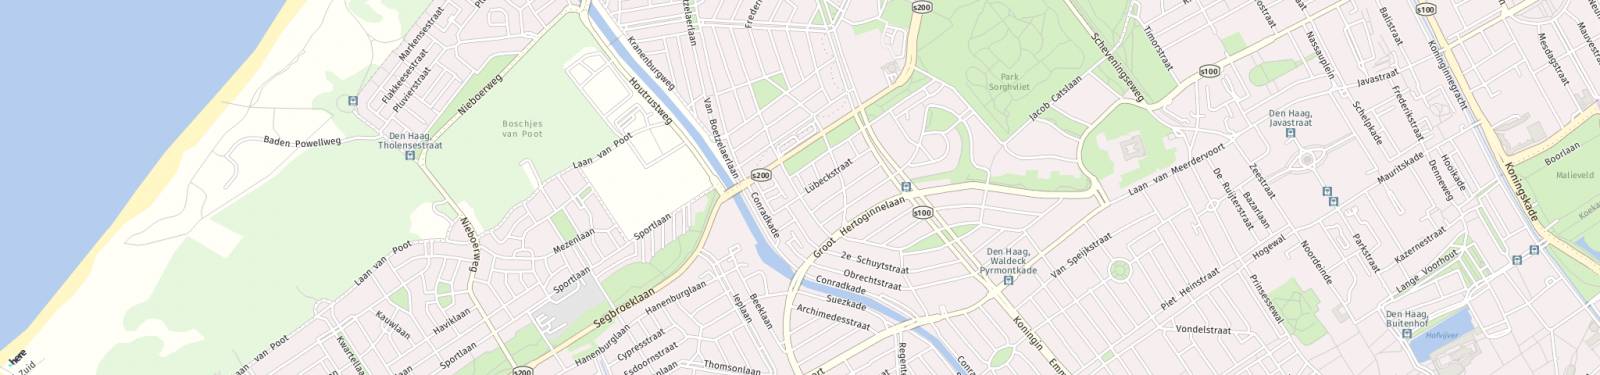 Kaart met locatie Appartement 2e Sweelinckstraat